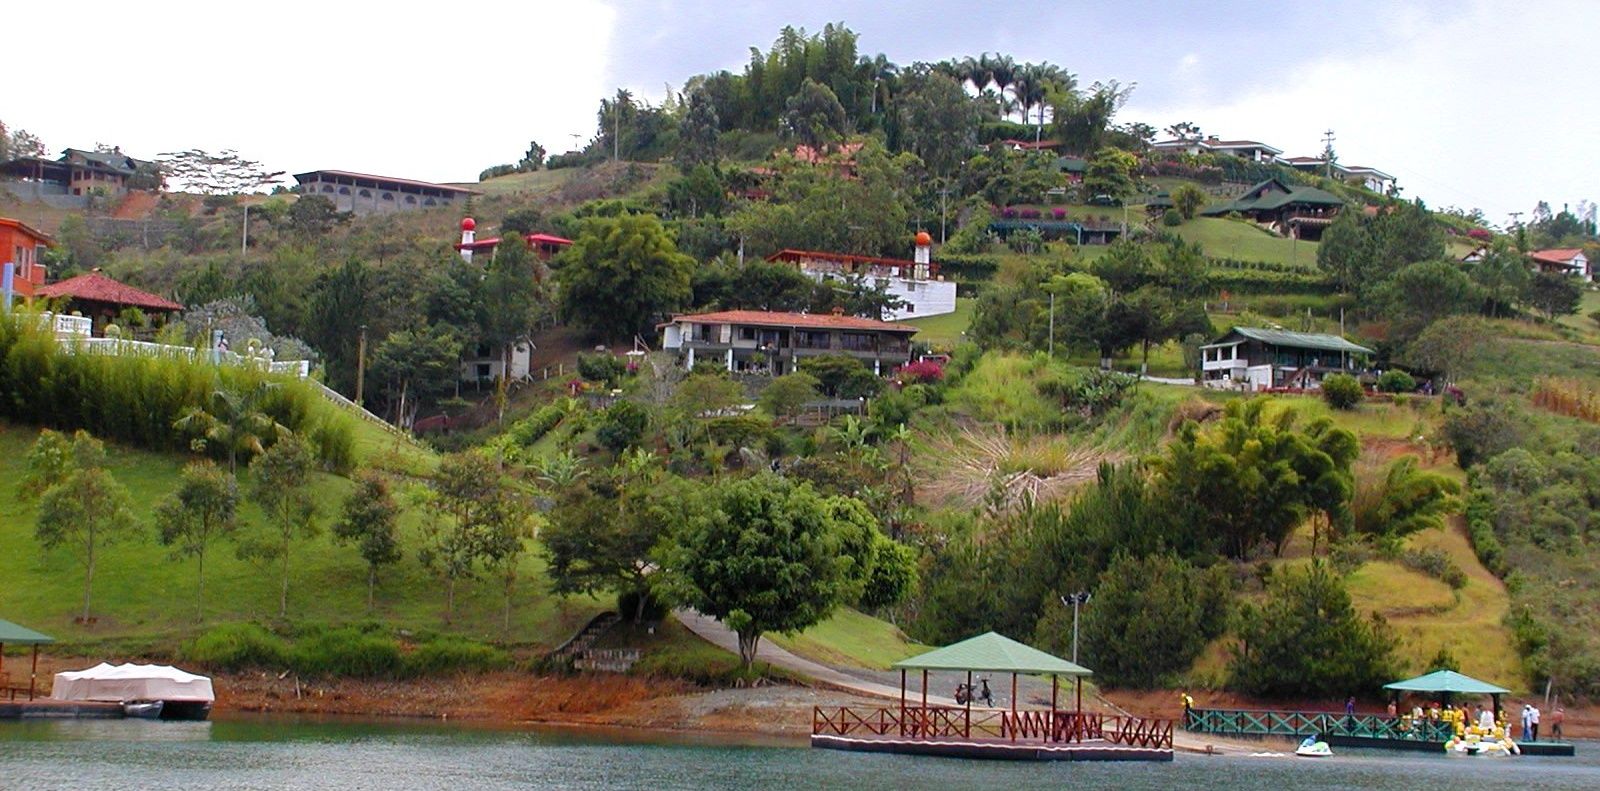 Lago Calima, Colombia - Información Turística Colombia